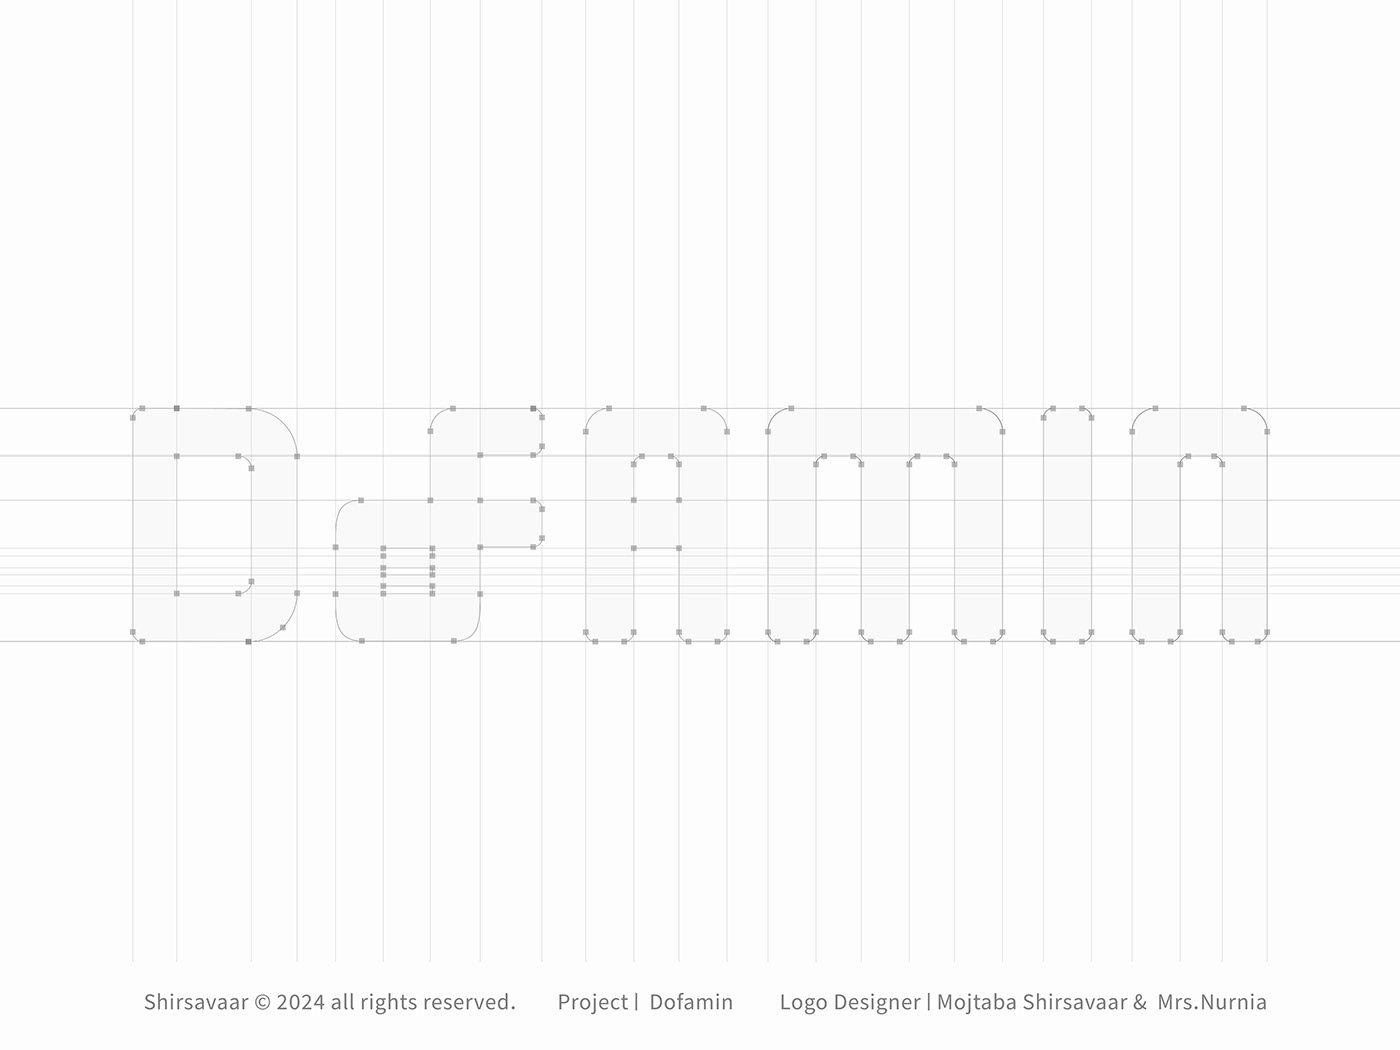 design graphic designer visual identity Logo Design brand identity visual identity Brand Design logo